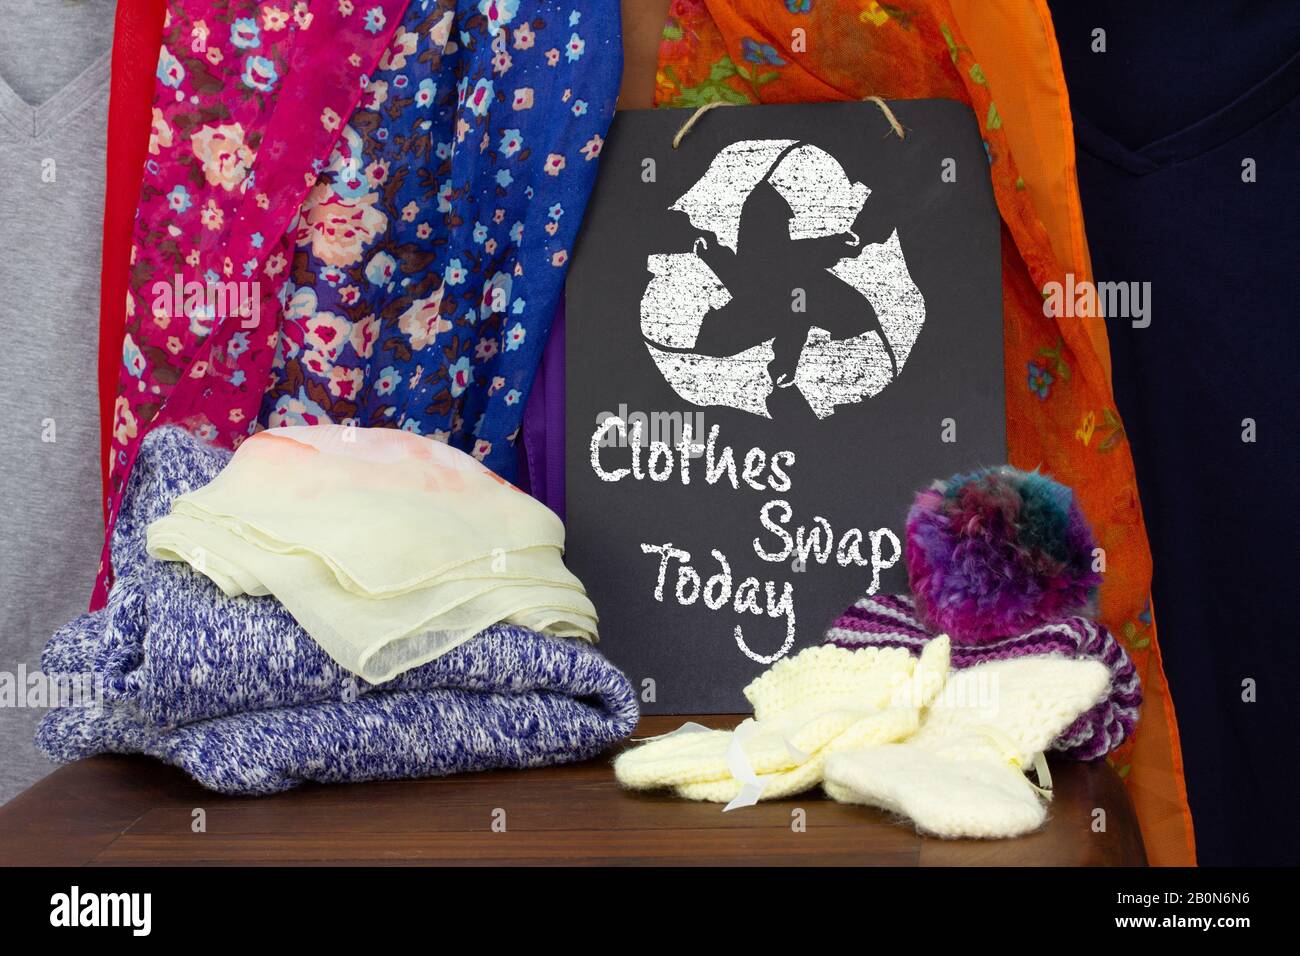 Kleidung Tauschen und recyceln Sie die Kleidung auf der Kreideplatte mit Modeartikeln, die Sie austauschen, nachhaltige Mode und keine Verschwendung, recyceln Sie Kleidung und Textilien auf r Stockfoto